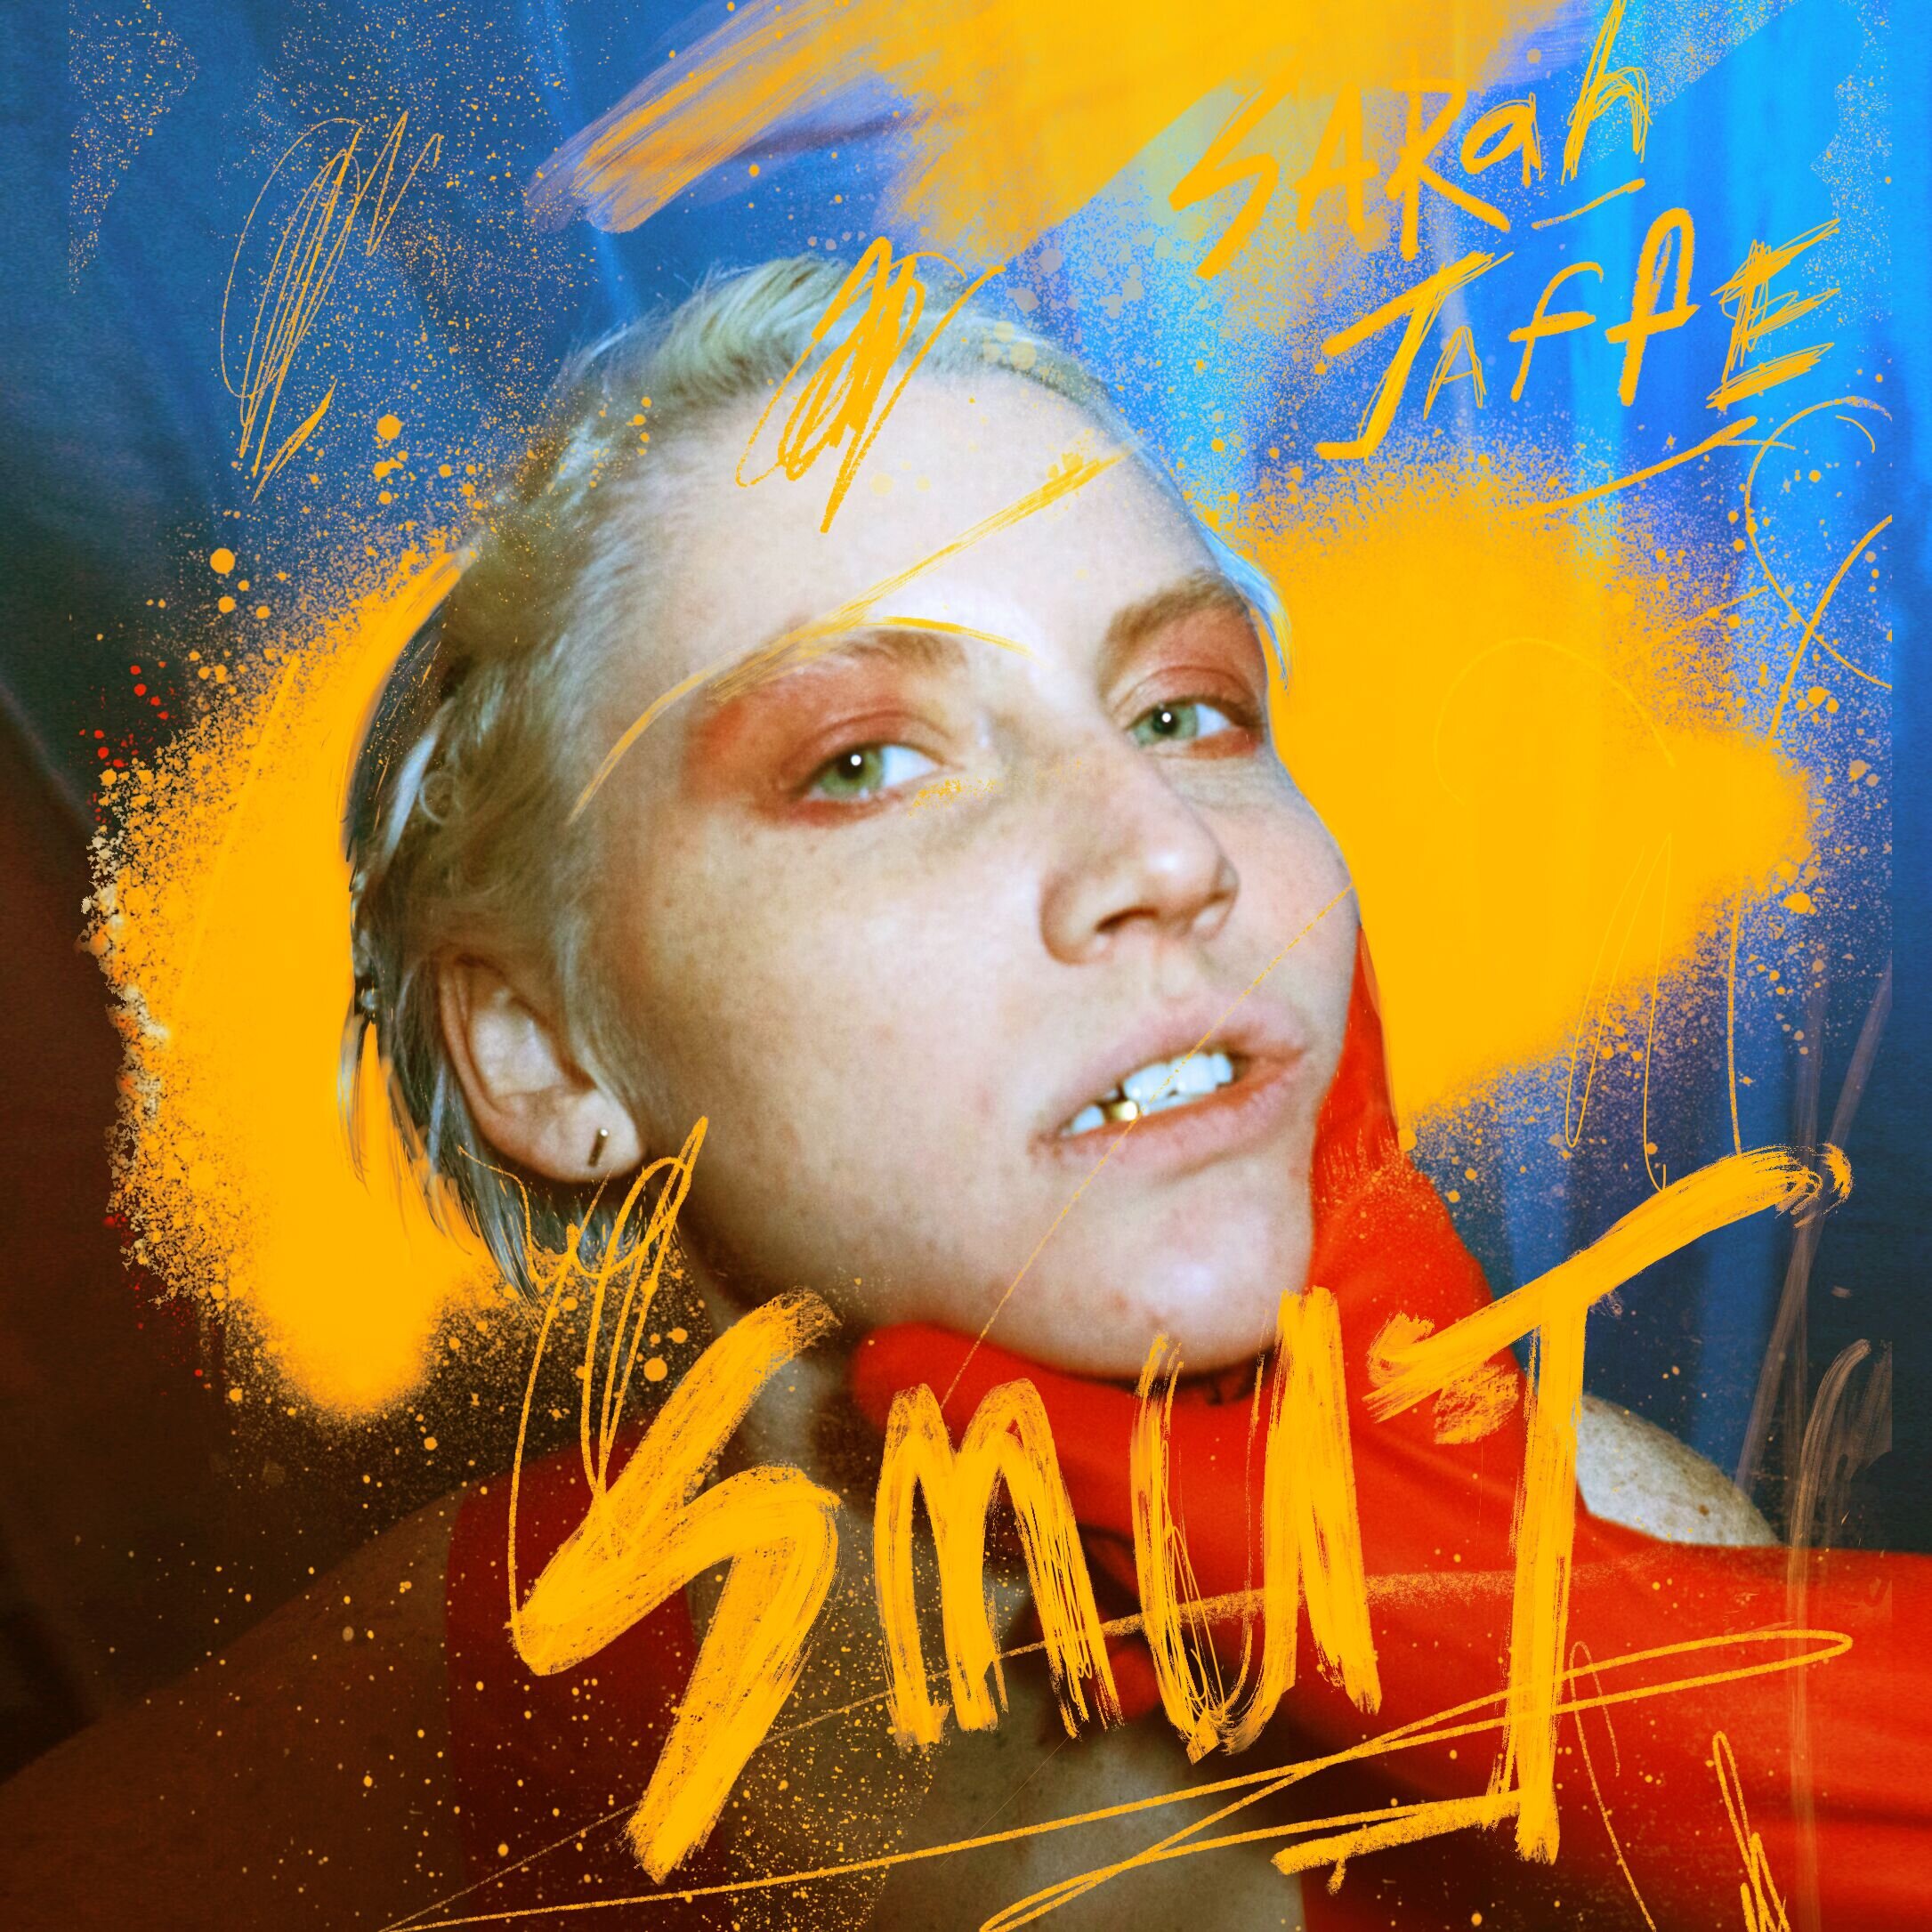 Sarah Jaffe - SMUT EP